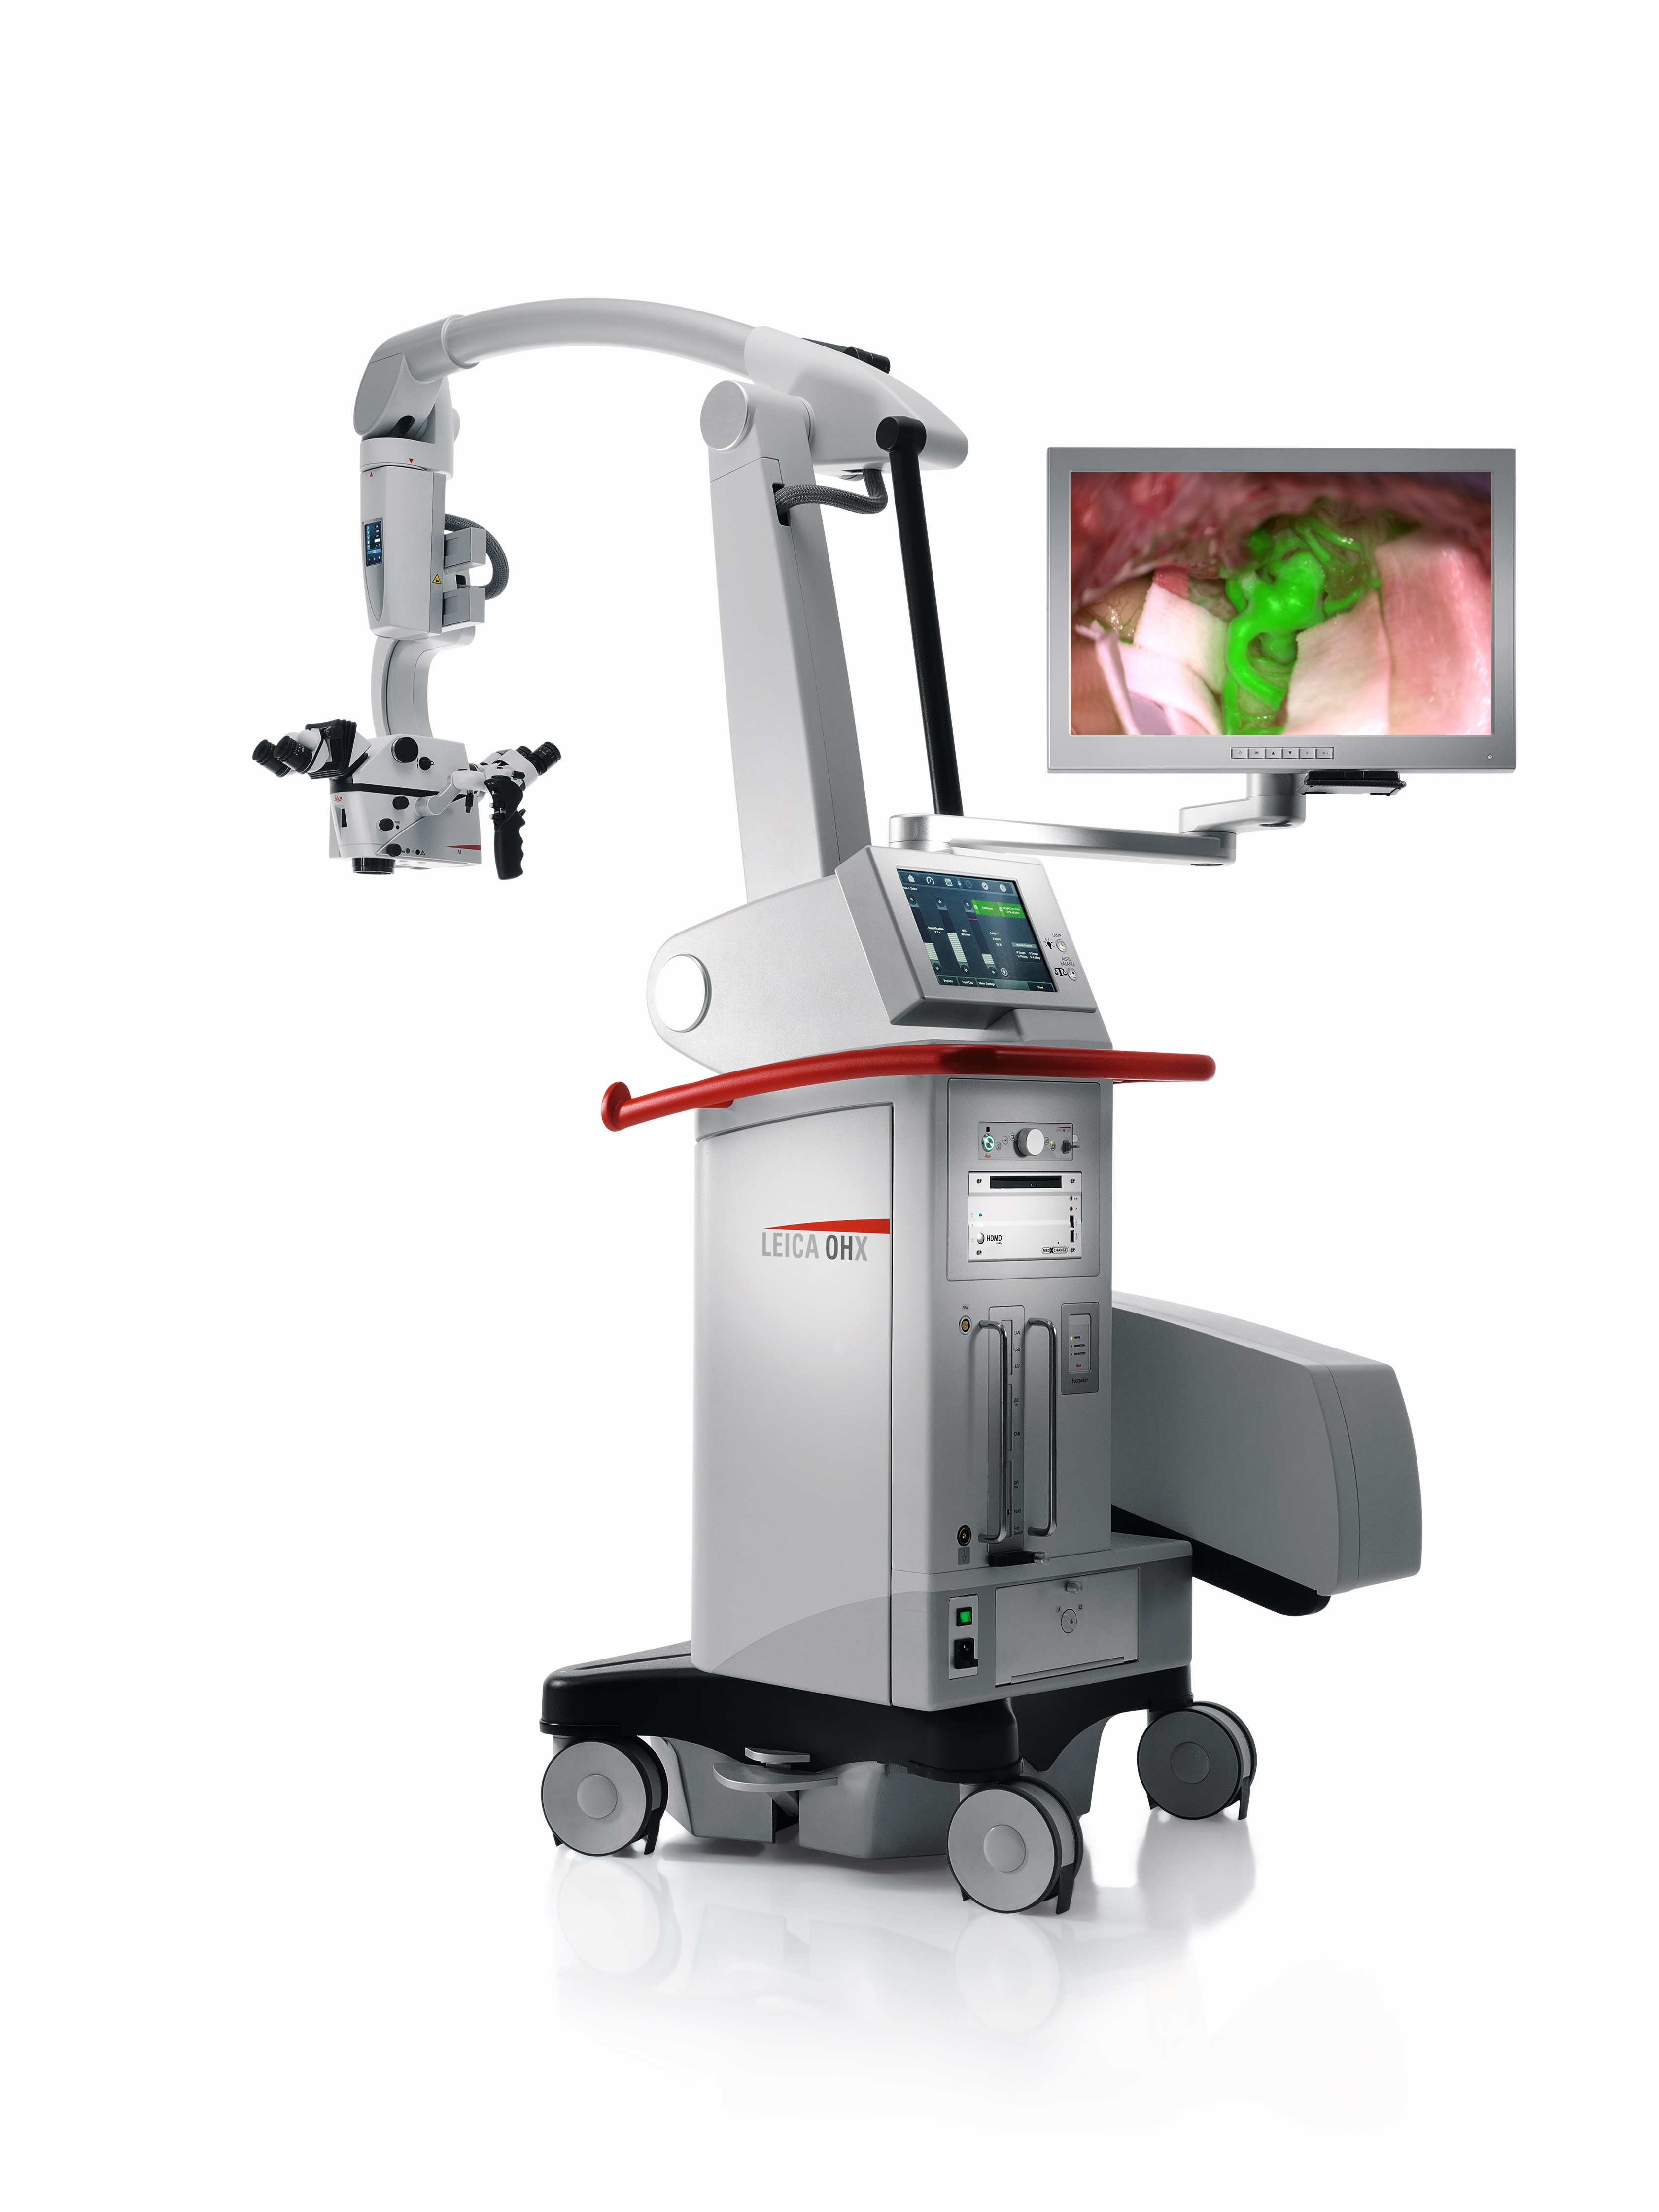  M530 OHX GLOW – технология дополненной реальности для визуализации кровотока